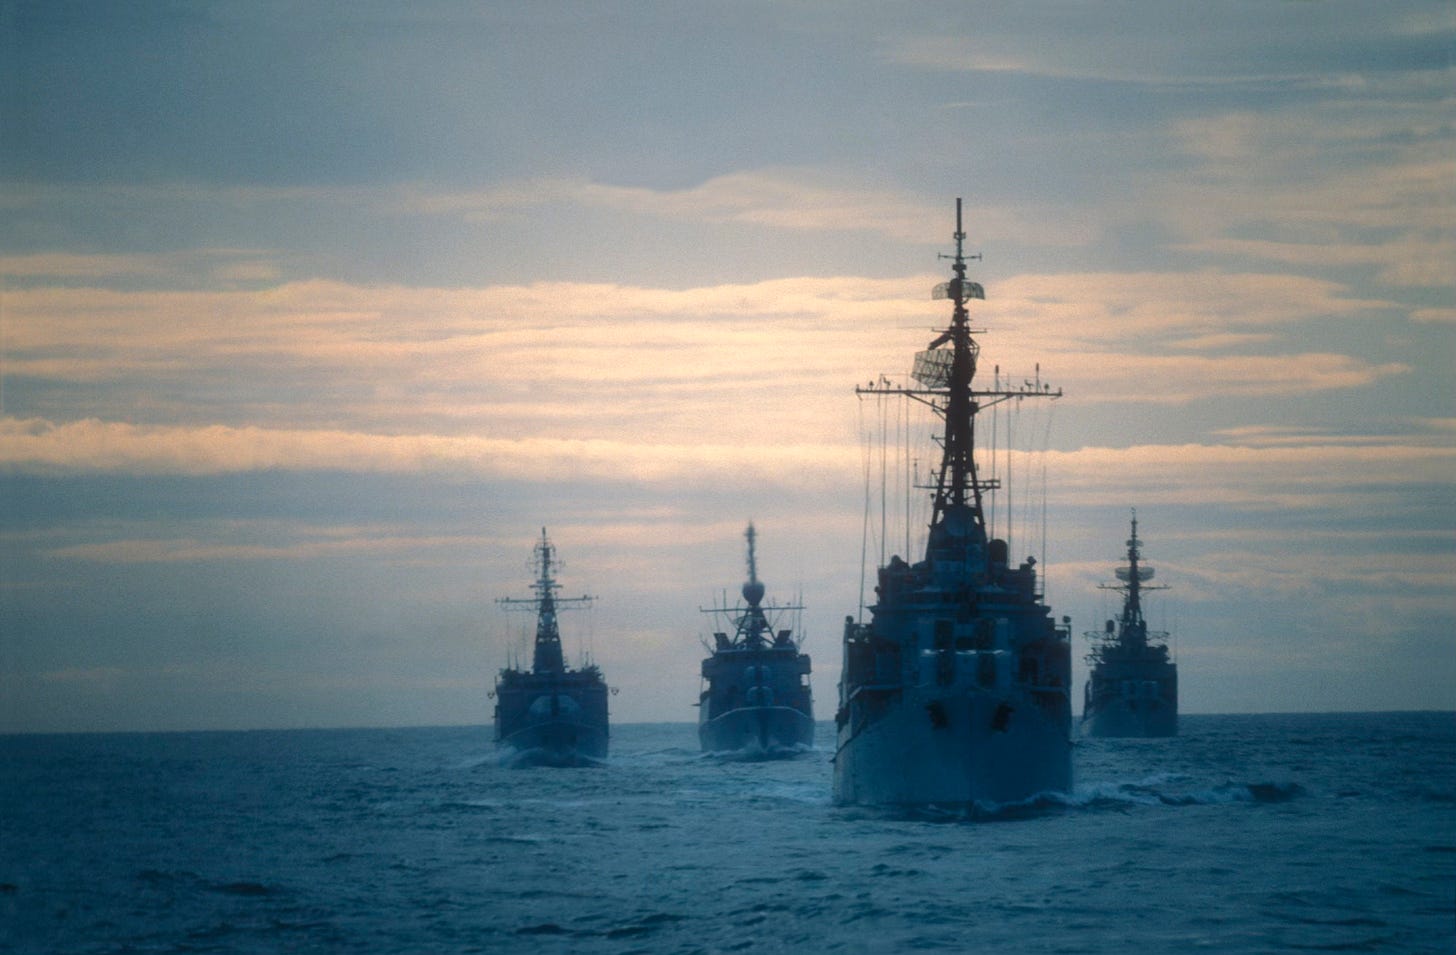 Four Navy Ships at sea